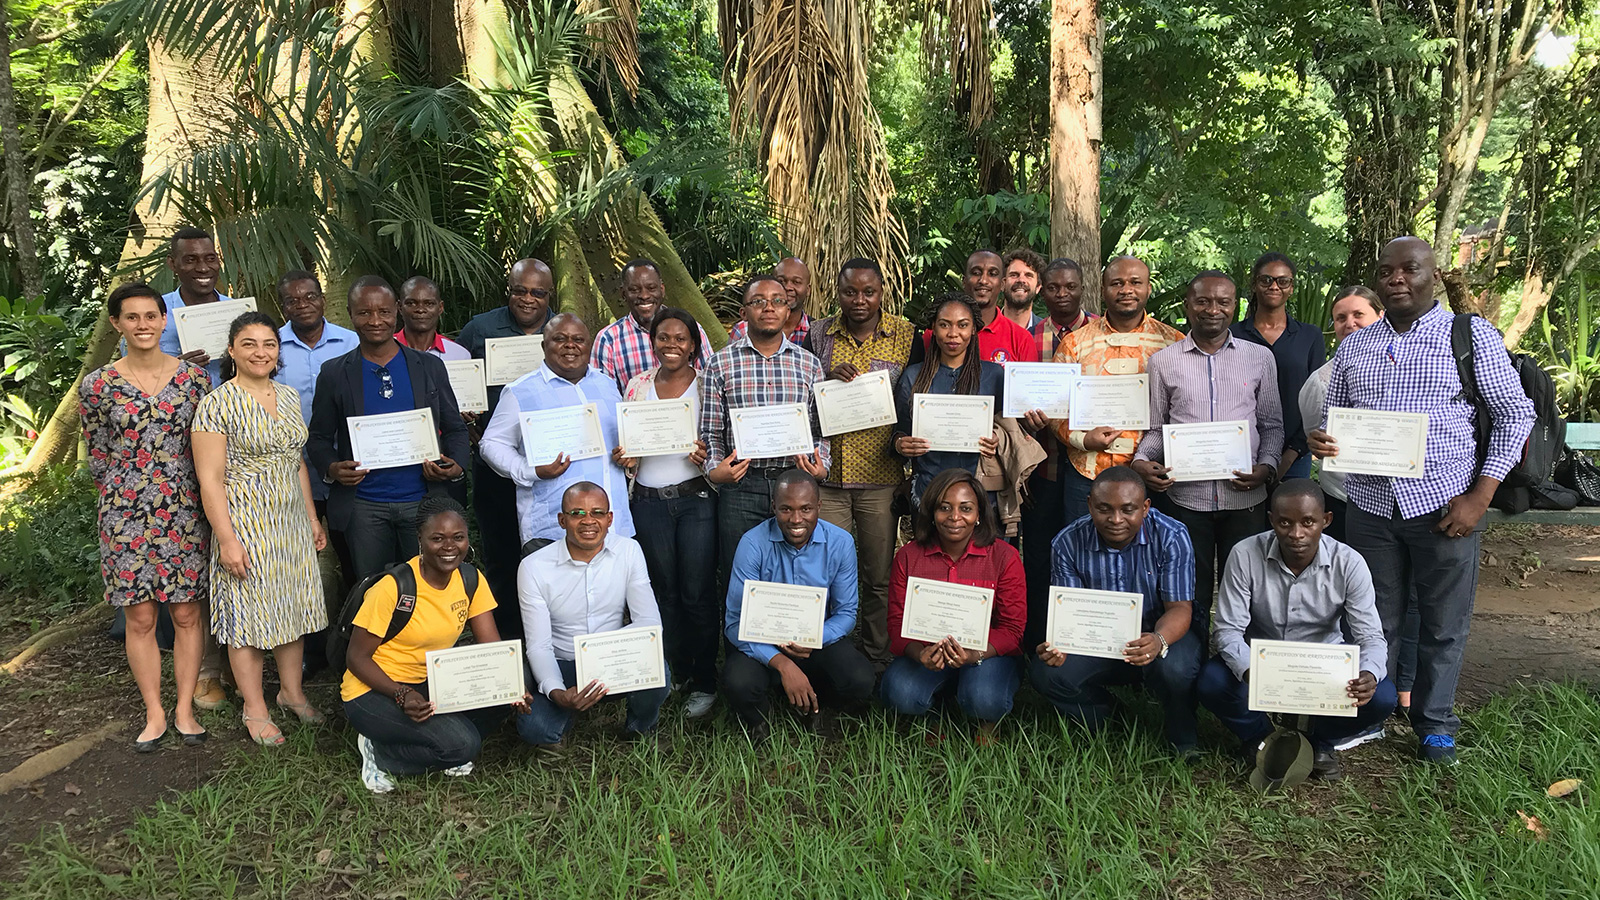 Groep afgestudeerden met certificaten van de Africa Carbon Accounting Courses van het Carbon Institute